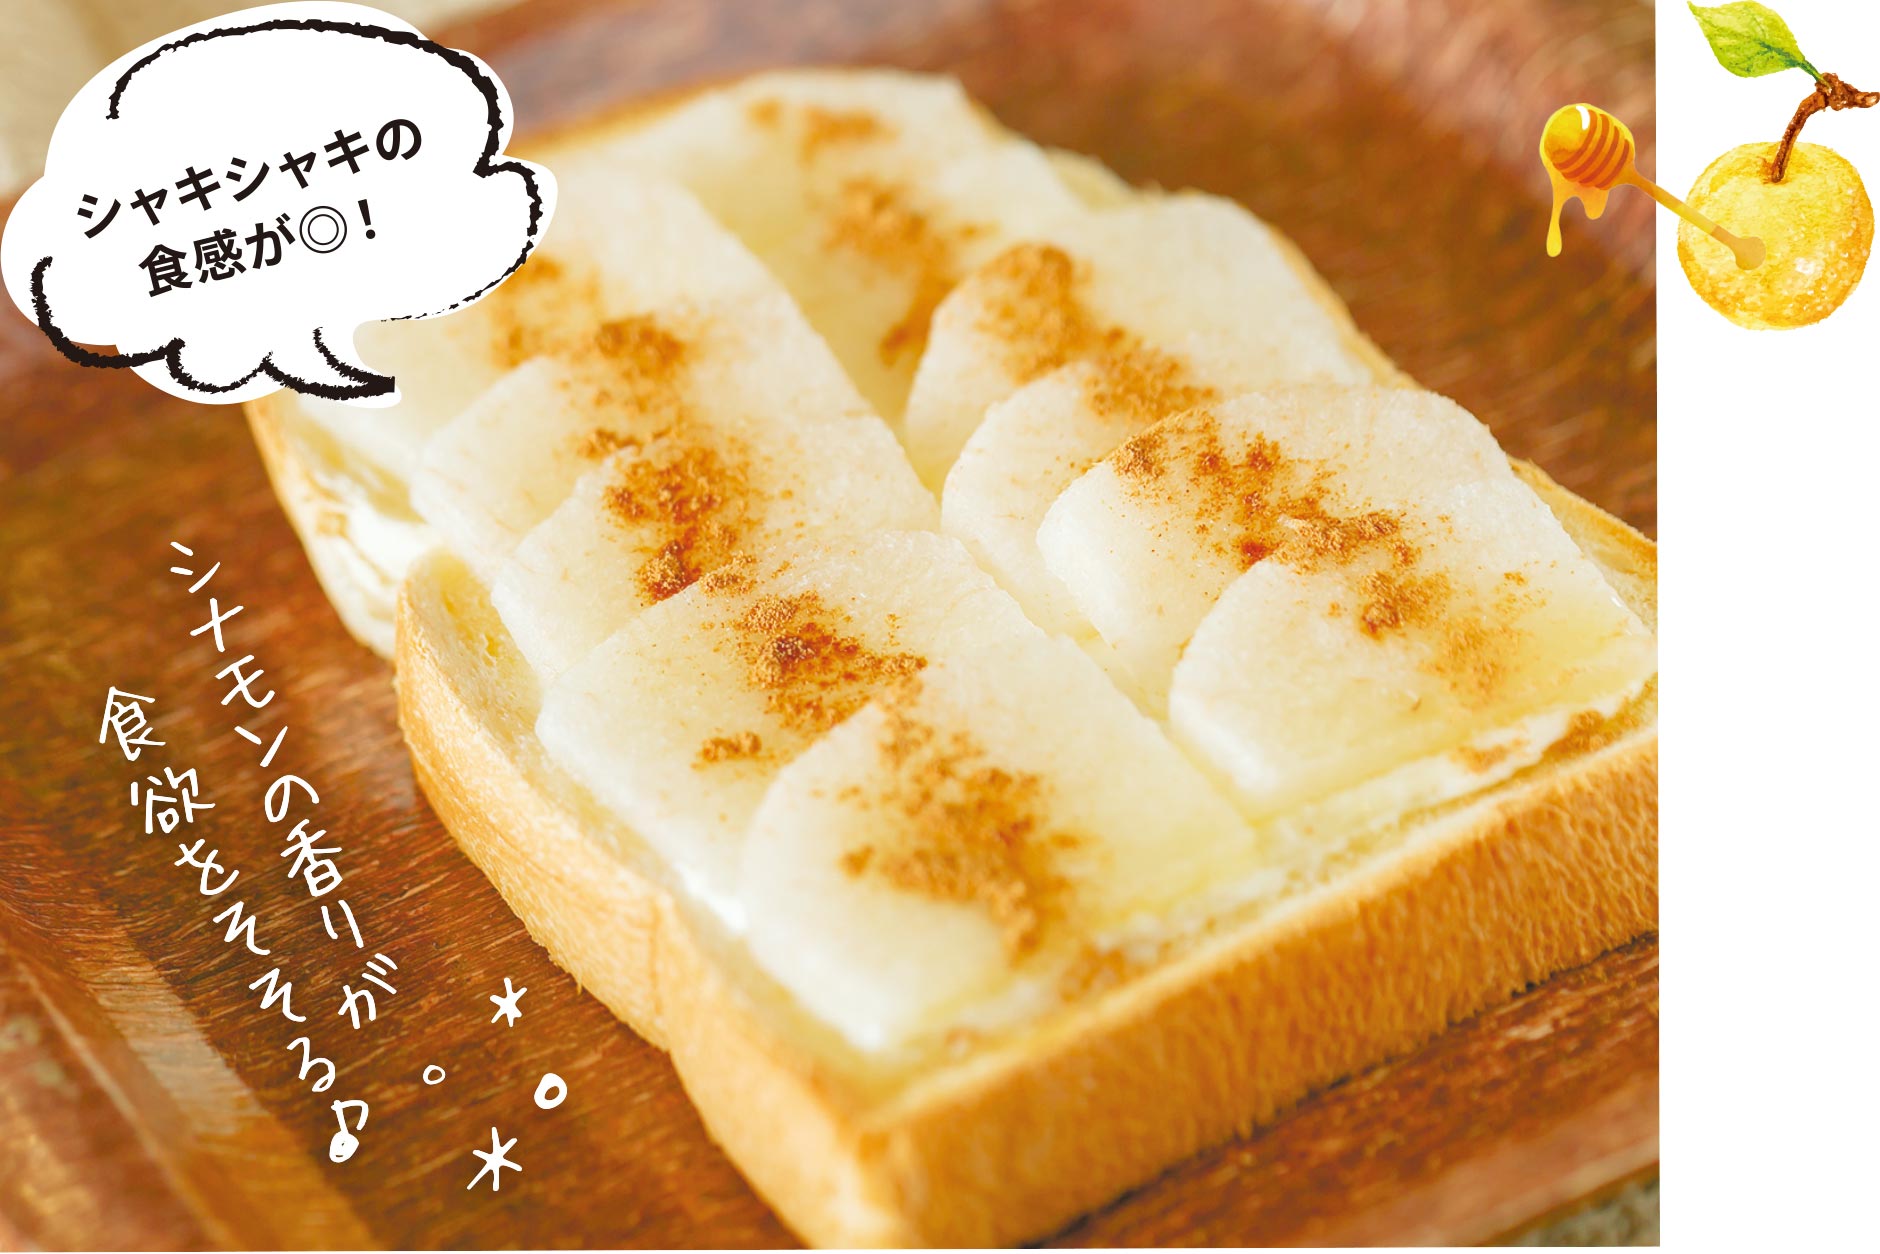 梨のハニークリームチーズトースト シャキシャキの食感が◎！ シナモンの香りが食欲をそそる♪